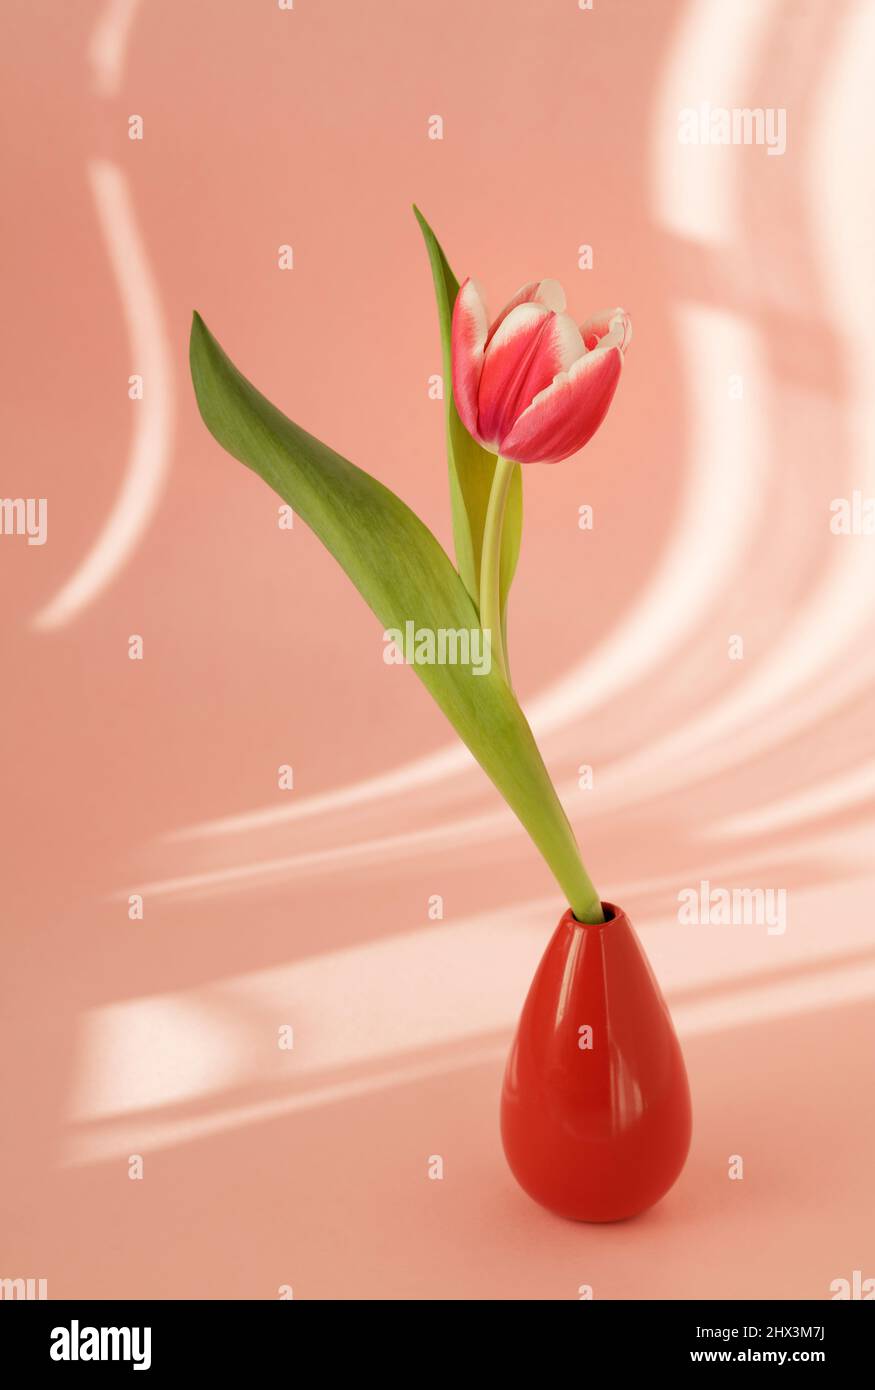 Tulipán rojo único con sombras de cortinas sobre fondo rosa Foto de stock